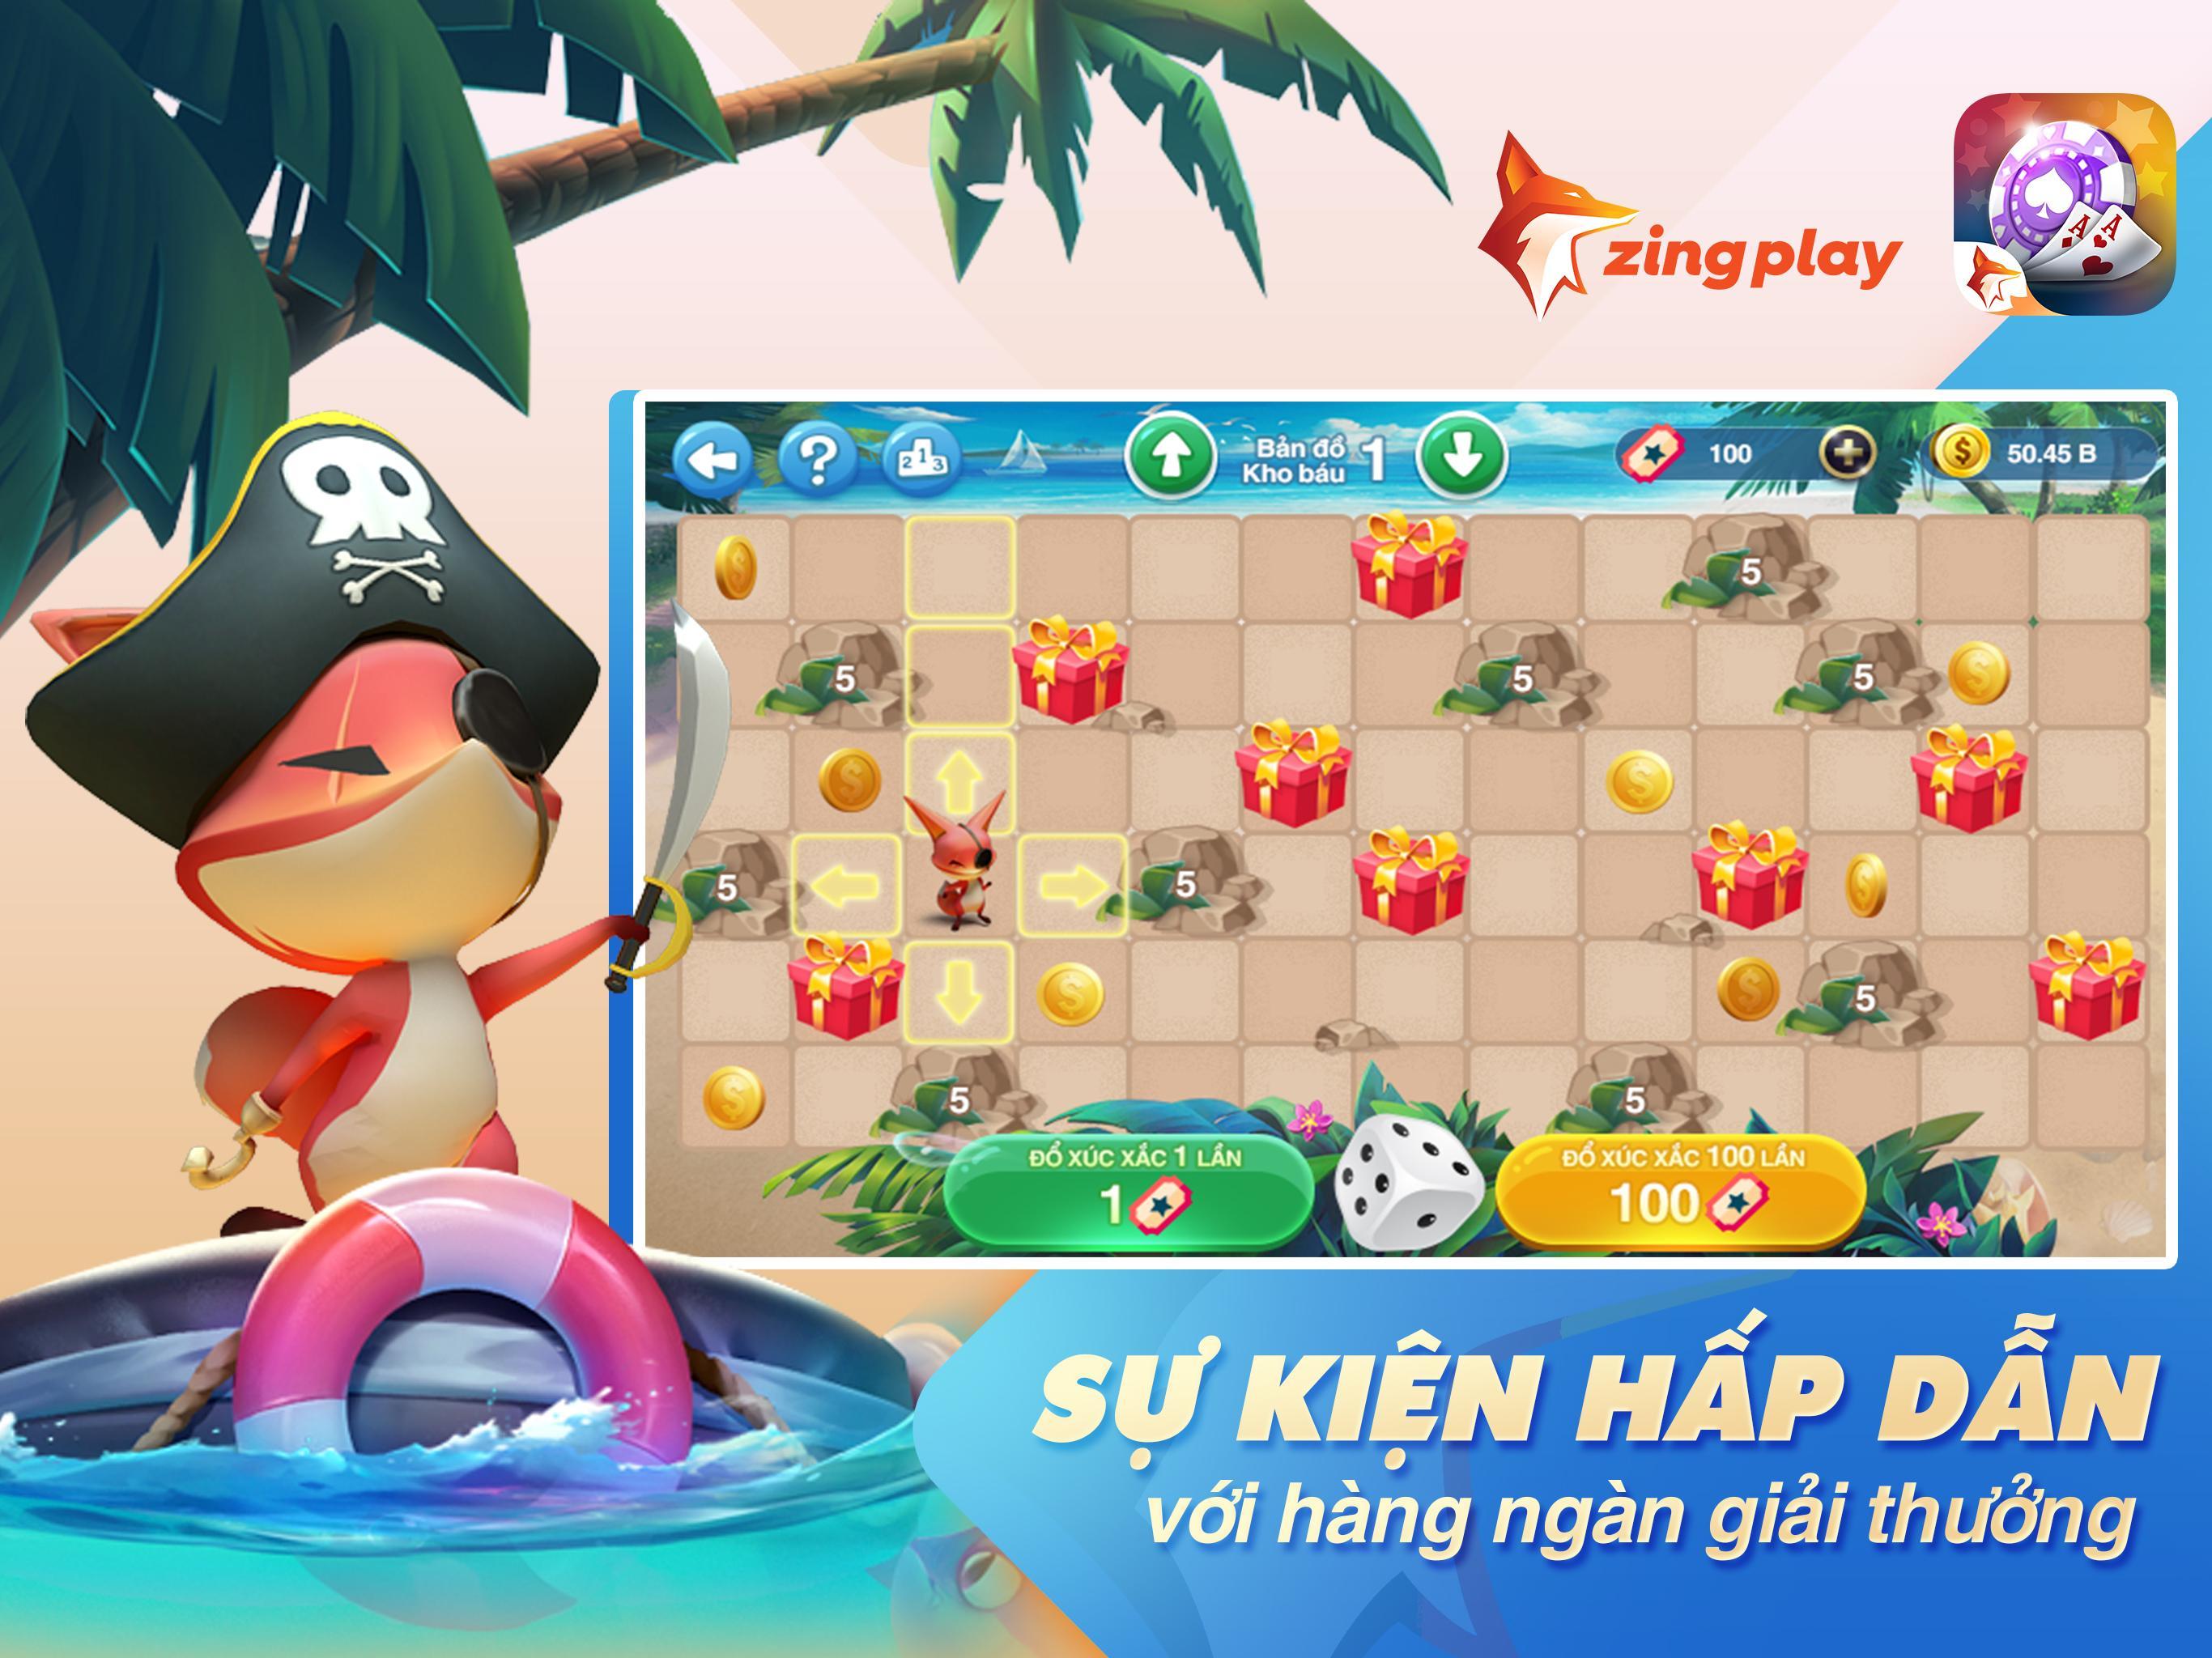 Tú Lơ Khơ - Tá Lả - Phỏm -  ZingPlay Game bài free 4.3 Screenshot 14